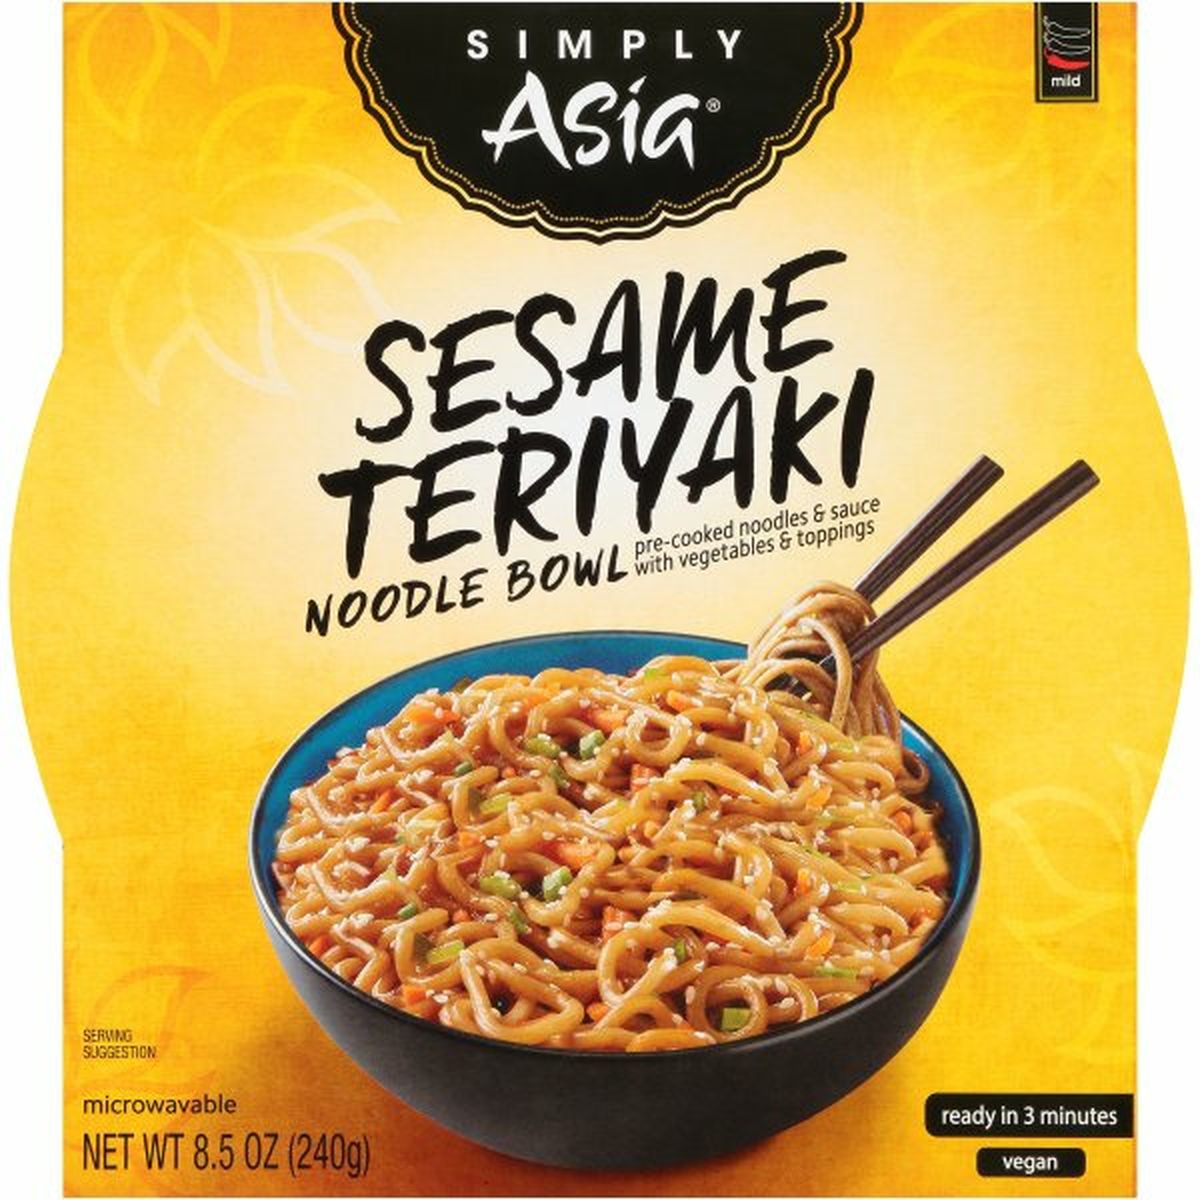 Calories in Simply Asias  Sesame Teriyaki Noodle Bowl